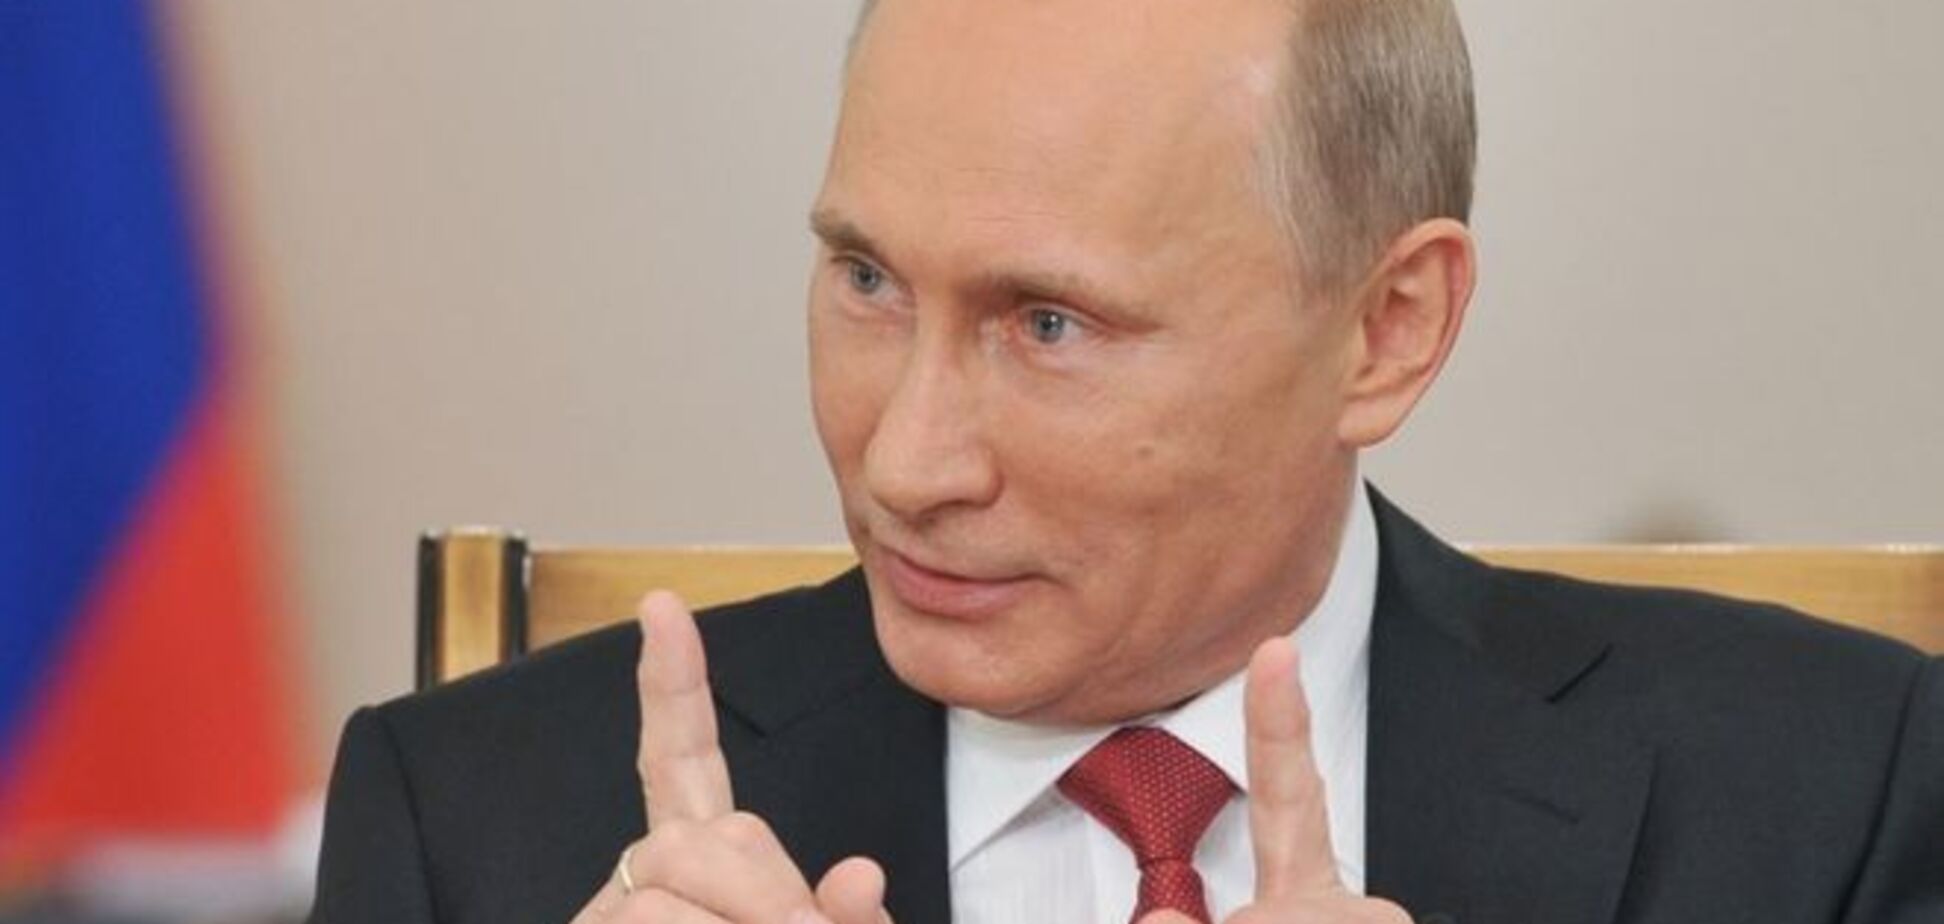 Ядерный шантаж Путина сработал - The Wall Street Journal